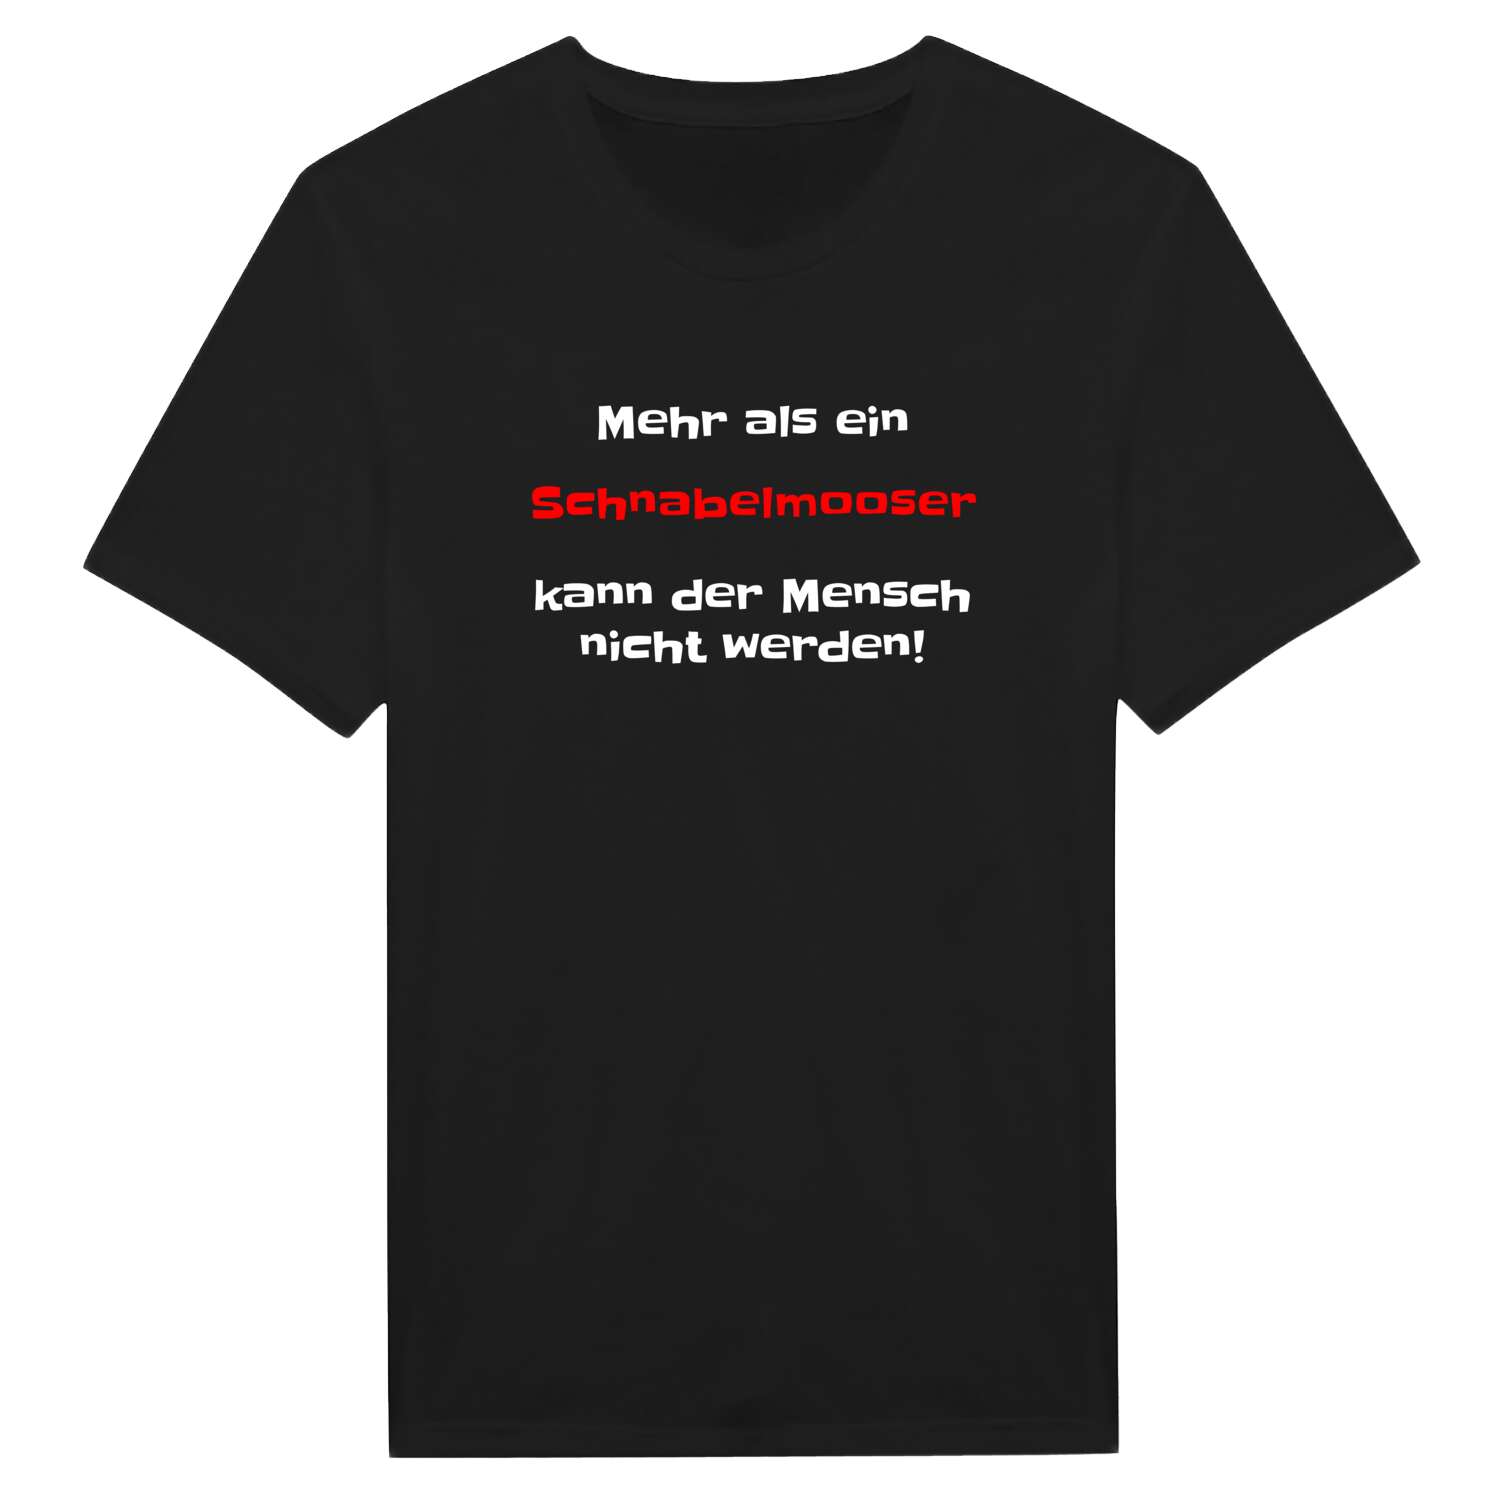 Schnabelmoos T-Shirt »Mehr als ein«